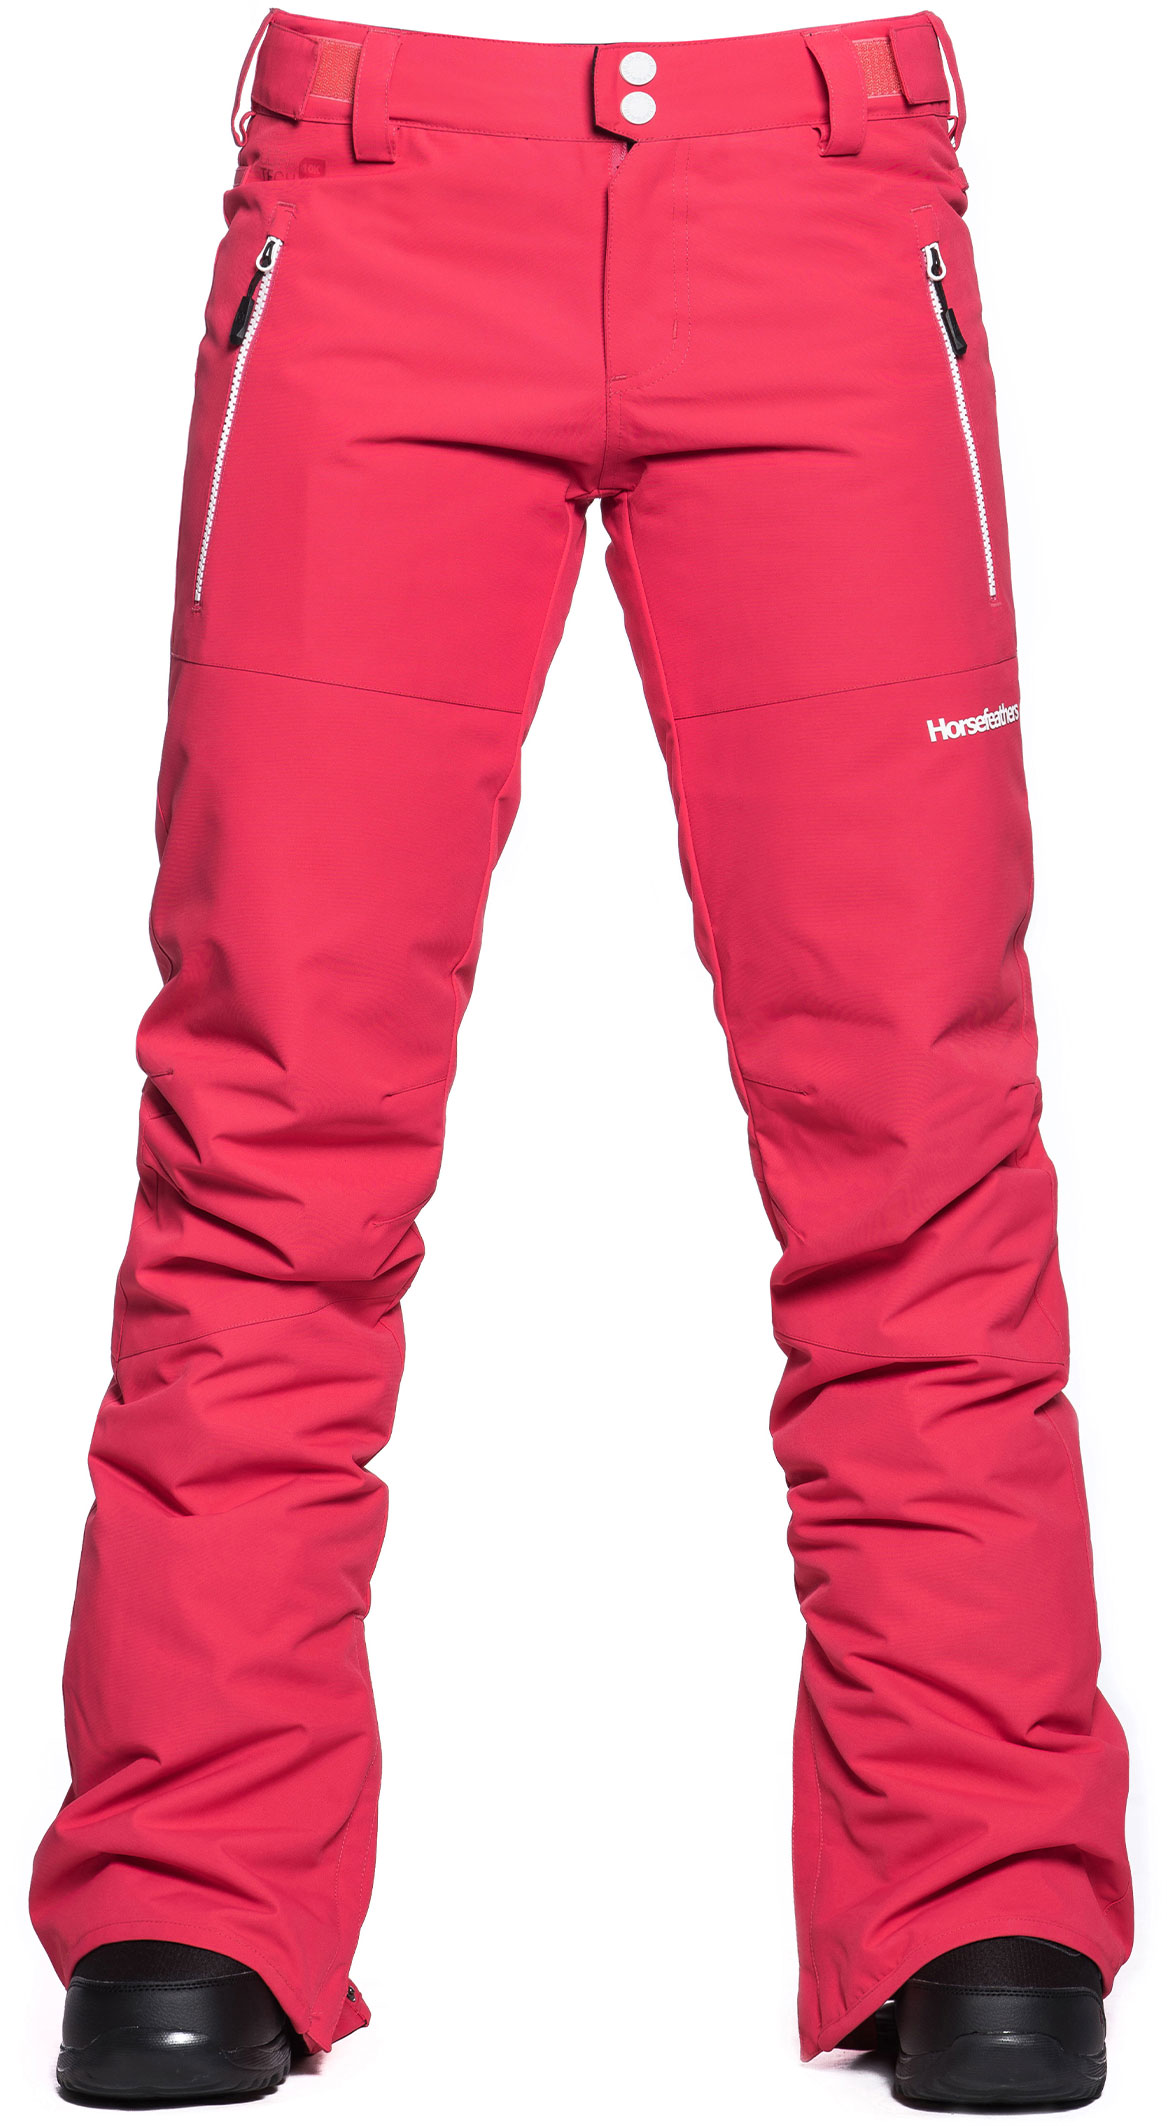 Women's ski/snowboard pants